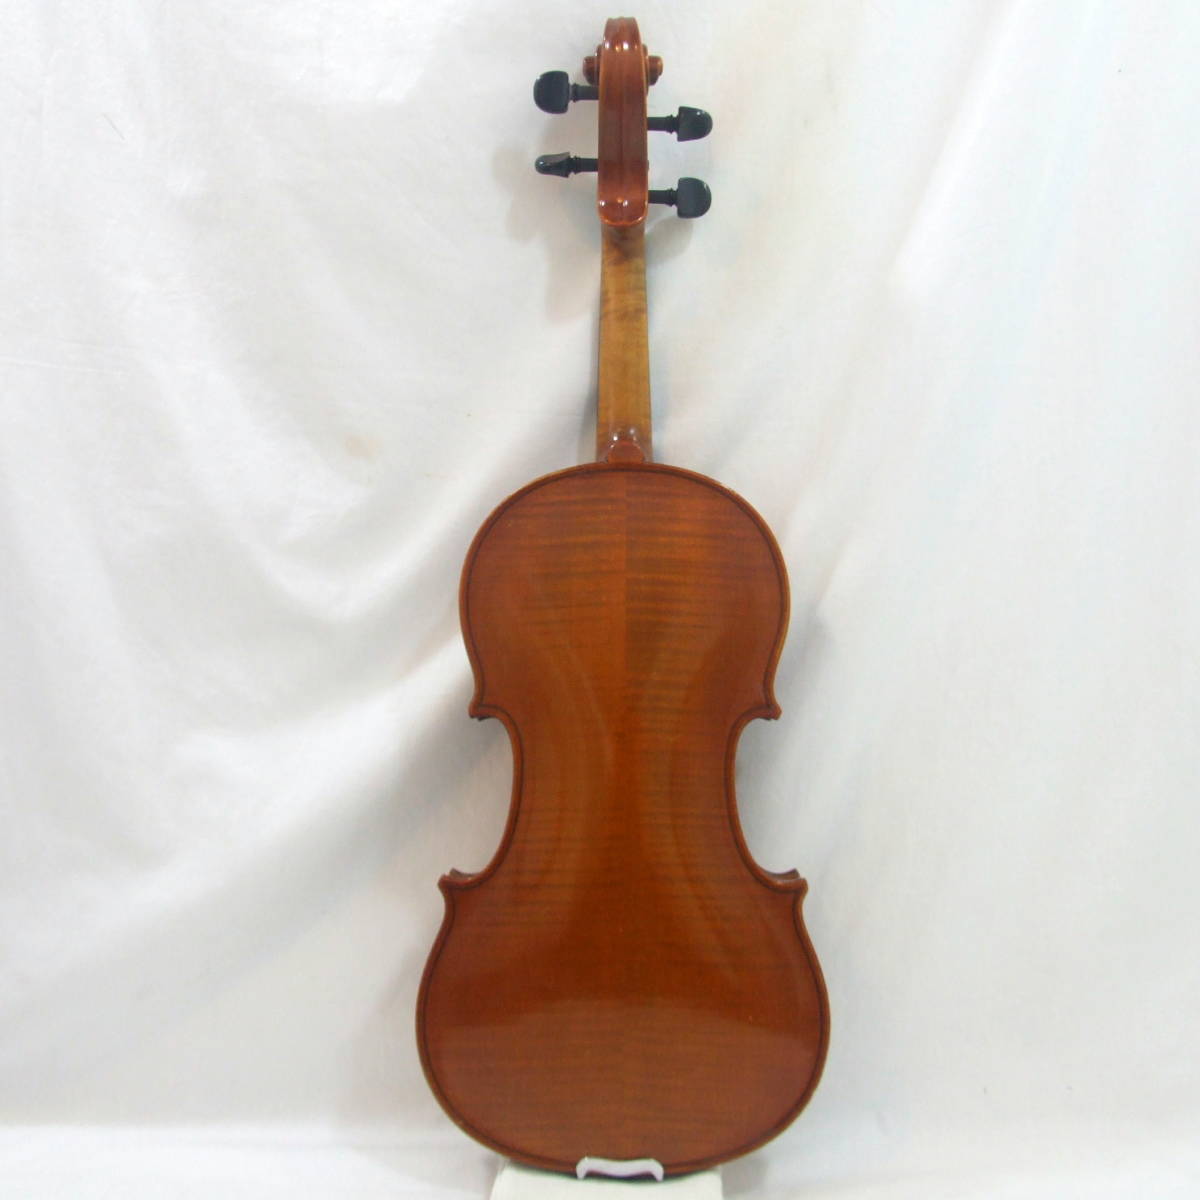  произведено техническое обслуживание Германия производства Conrad Gotz Jr 1977 год темно синий la-togetsu современный скрипка 4/4 C.A.GOTZ jr Nr 108..